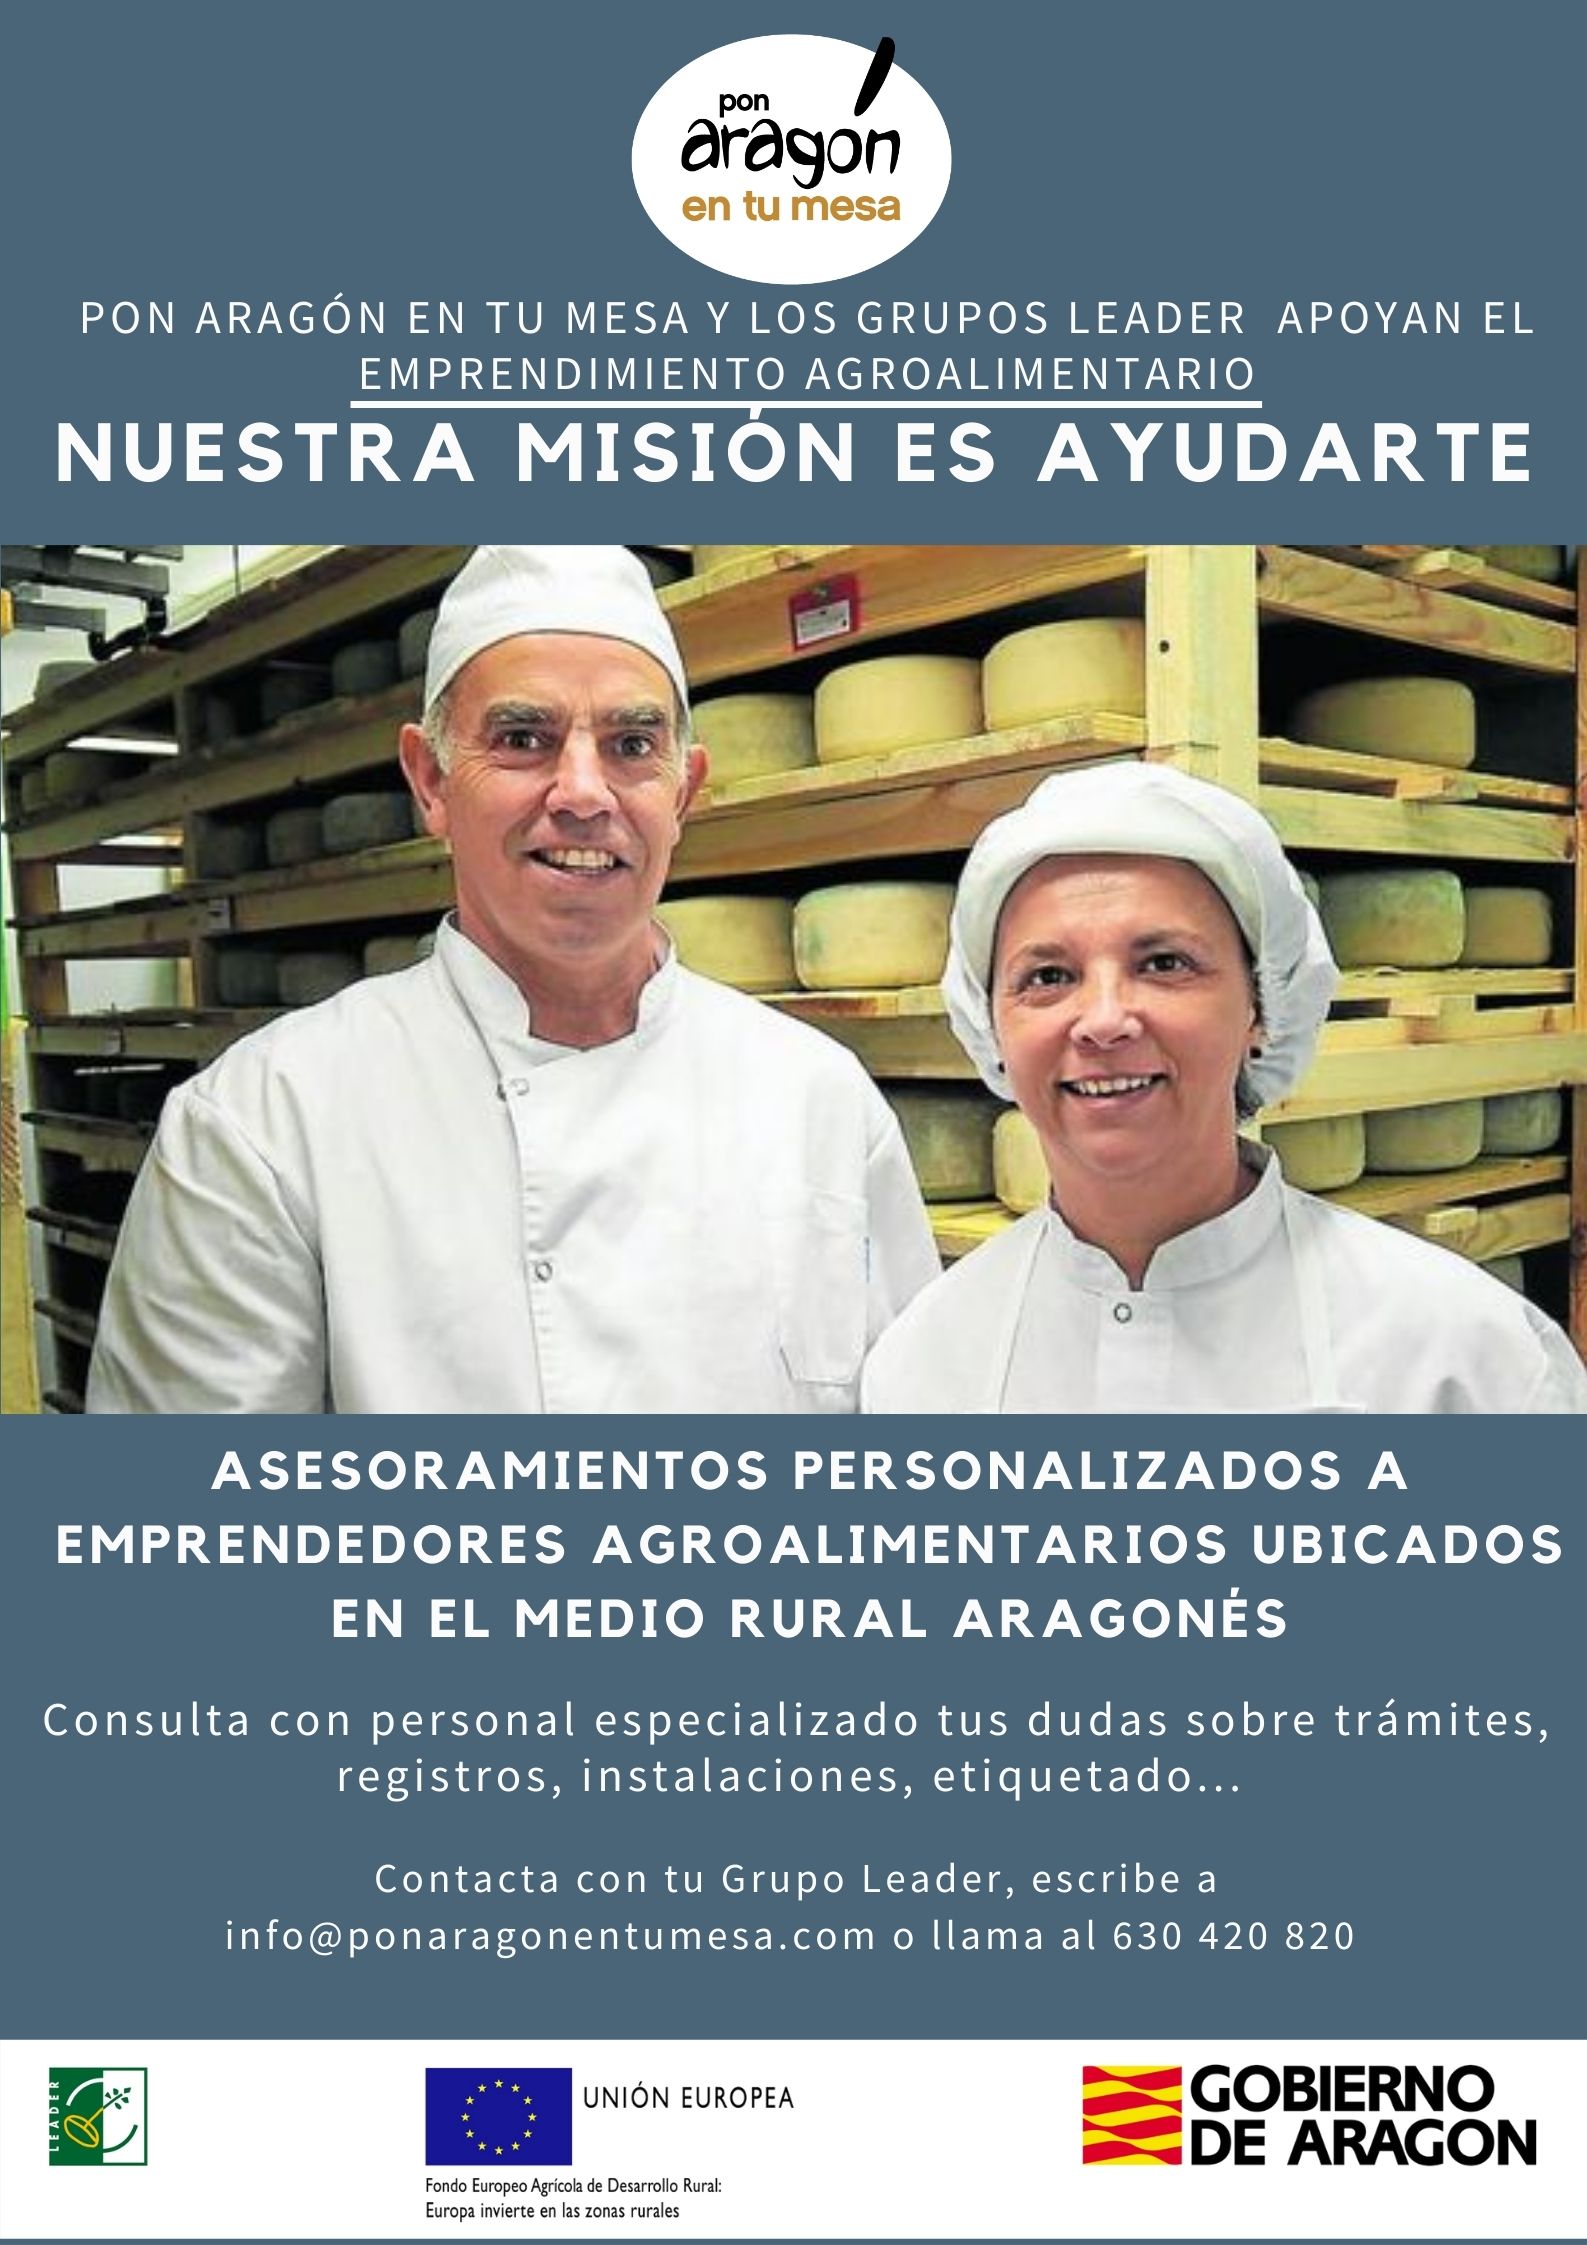 “Pon Aragón en tu mesa” apoya al emprendedor agroalimentario con asesoramientos personalizados